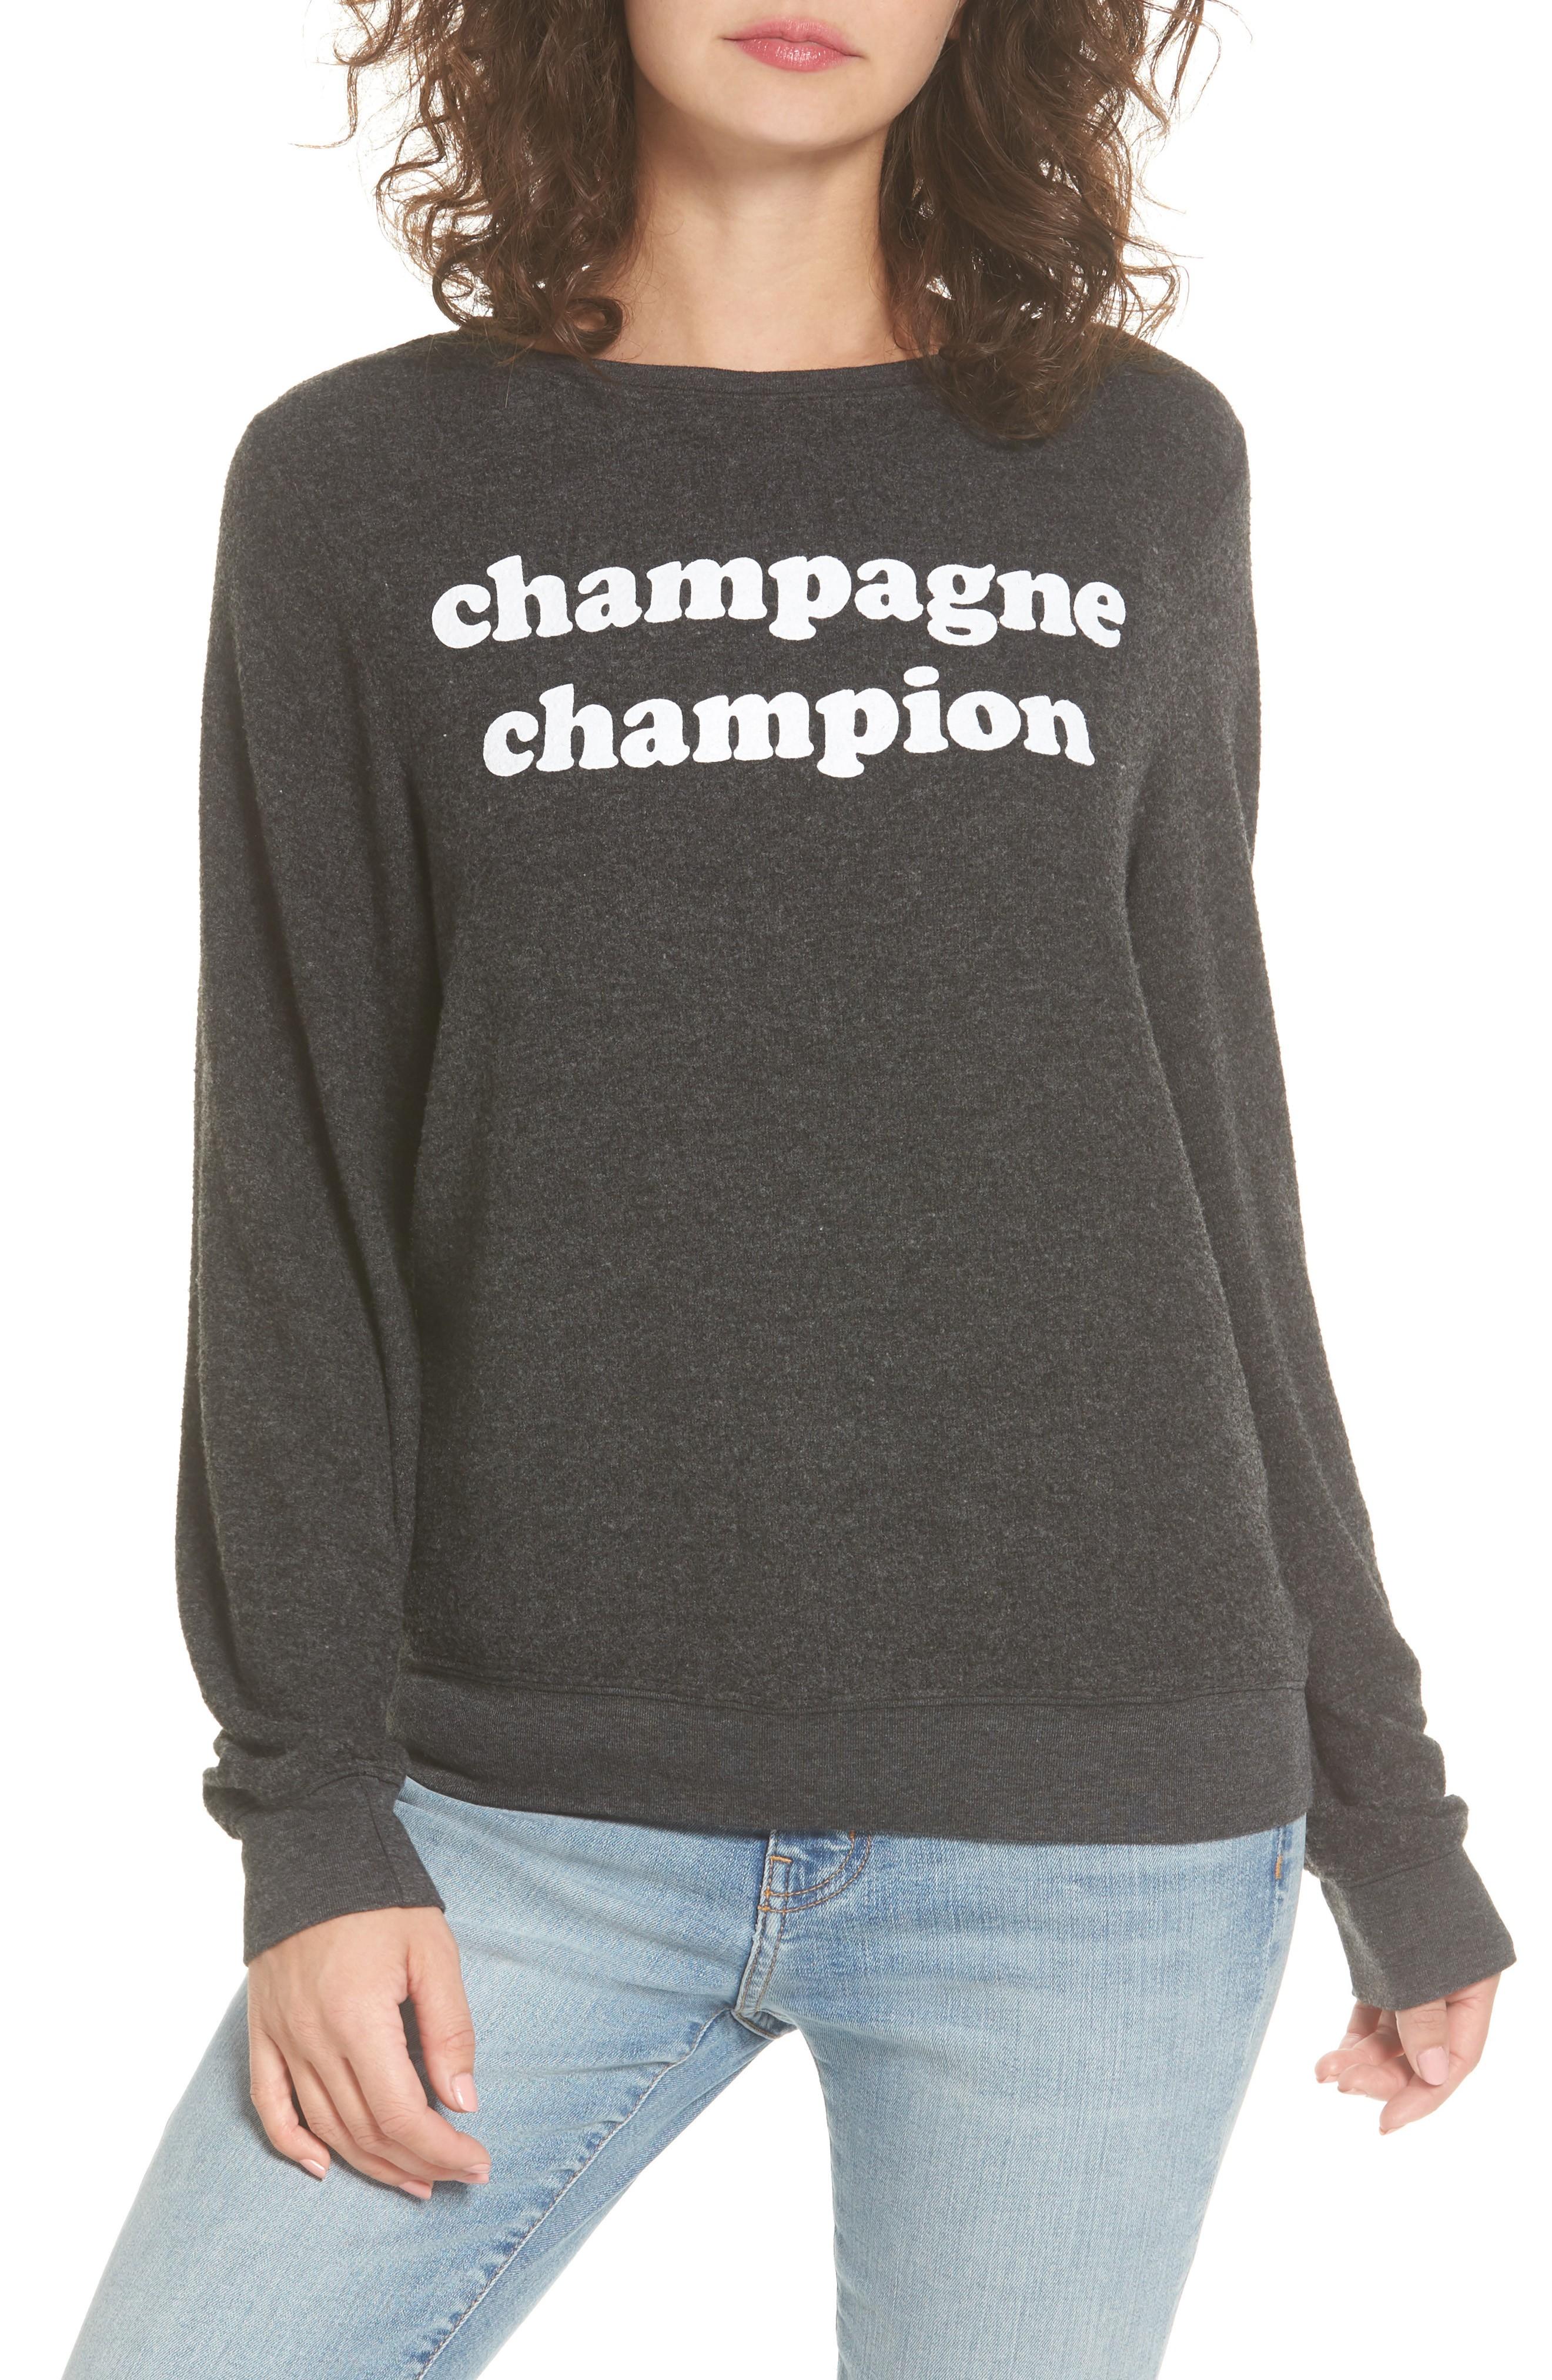 champagne champion sweatshirt